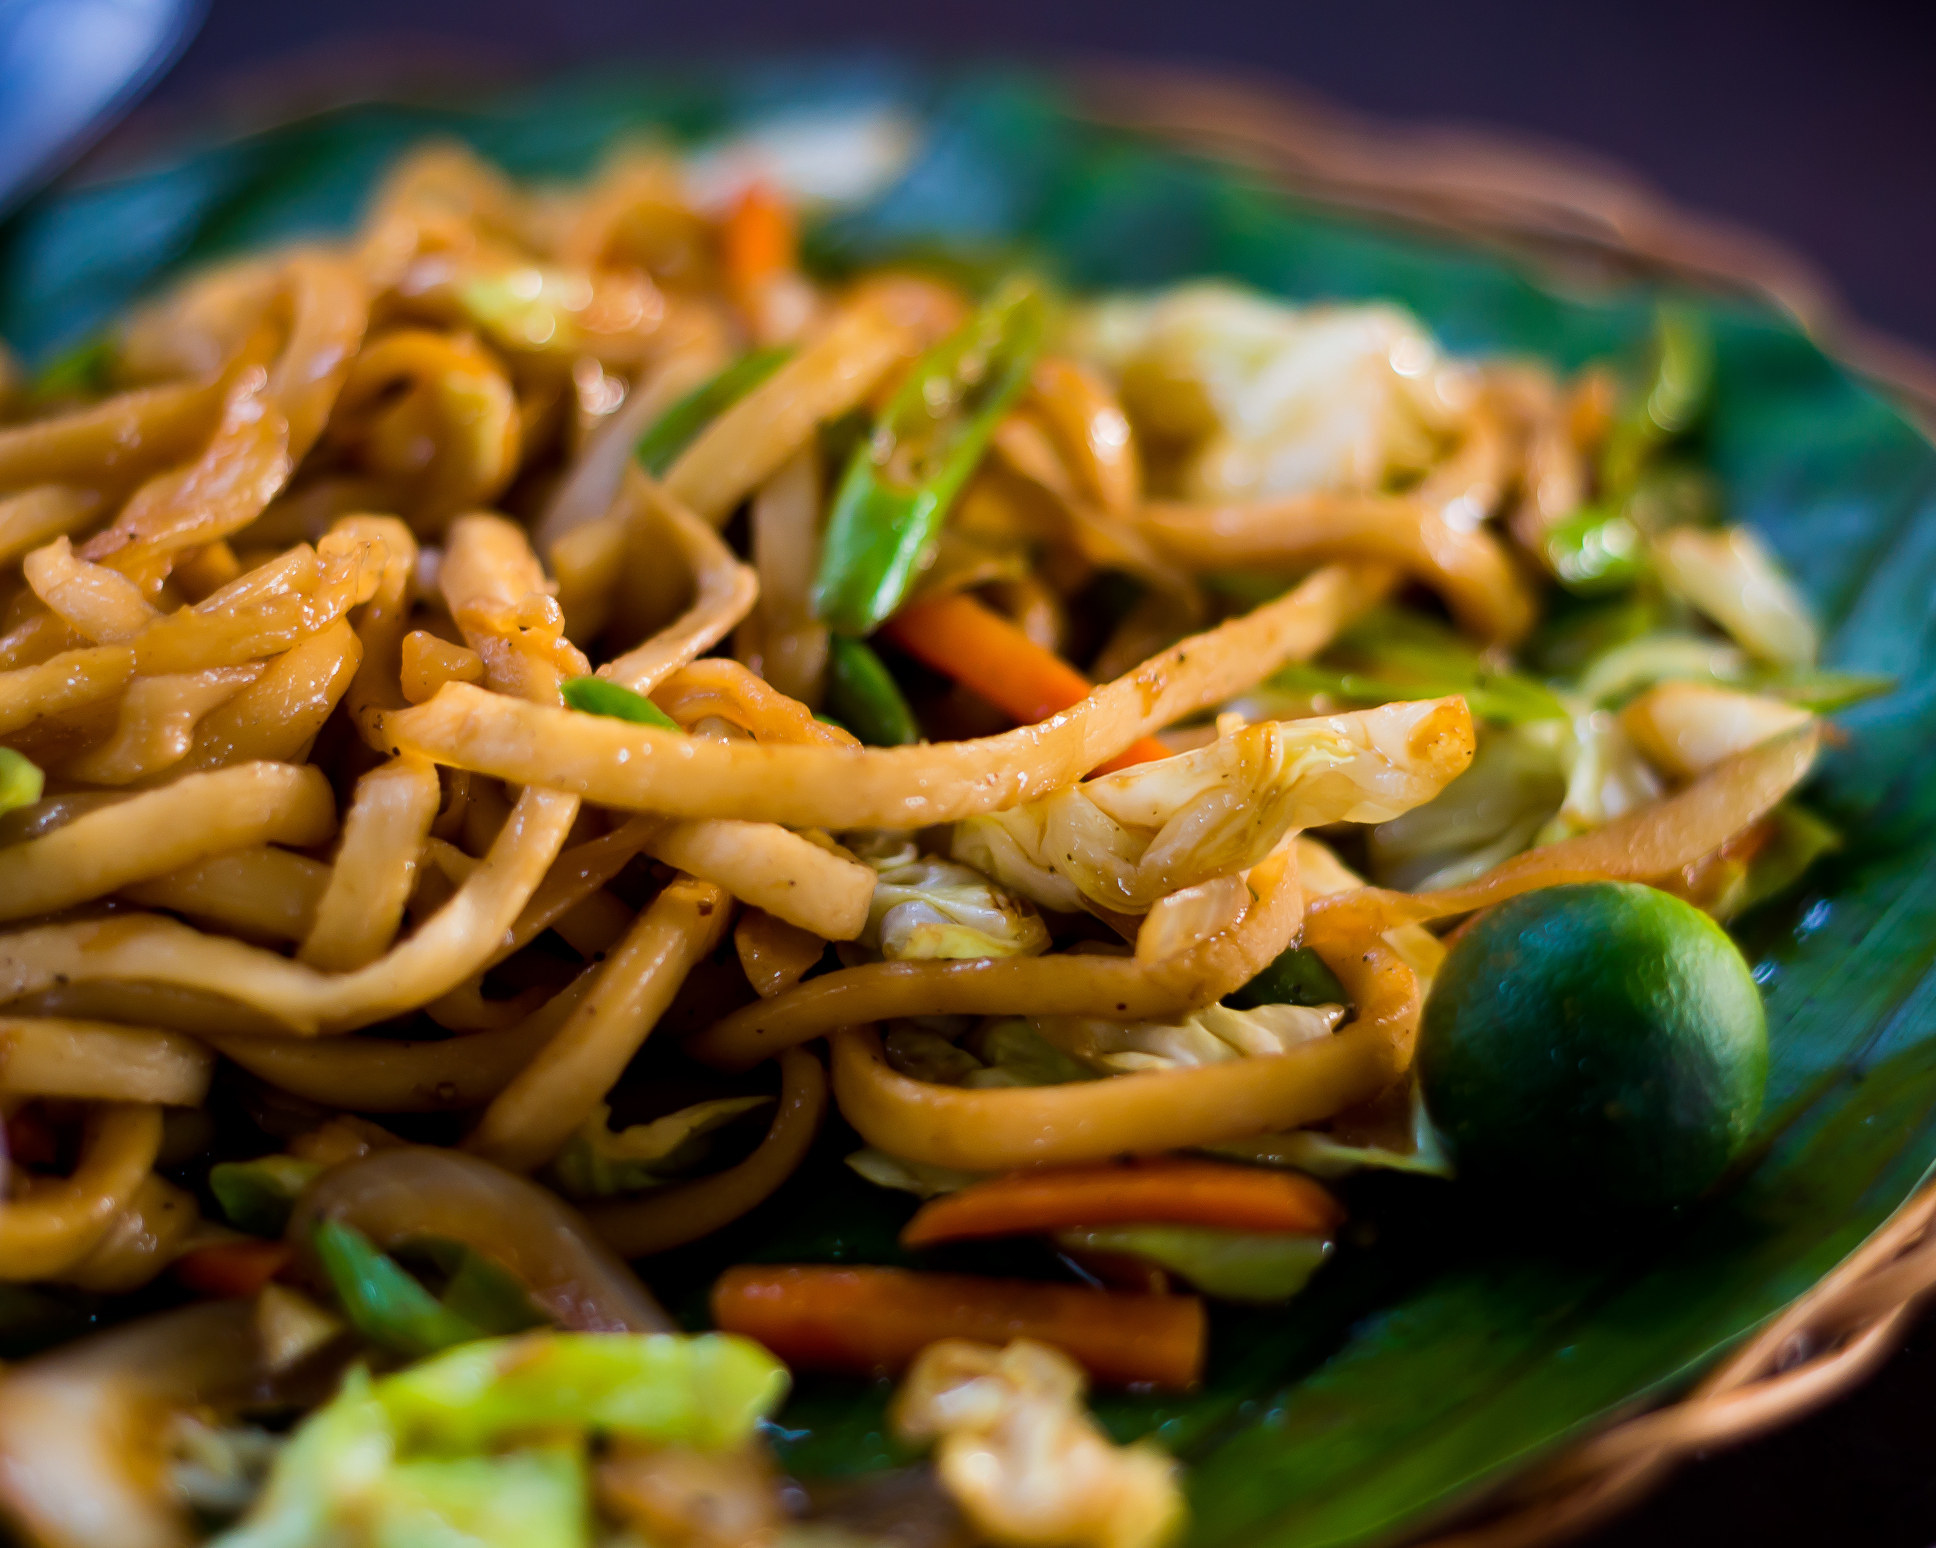 Filipino pancit, a stir-fried noodle dish